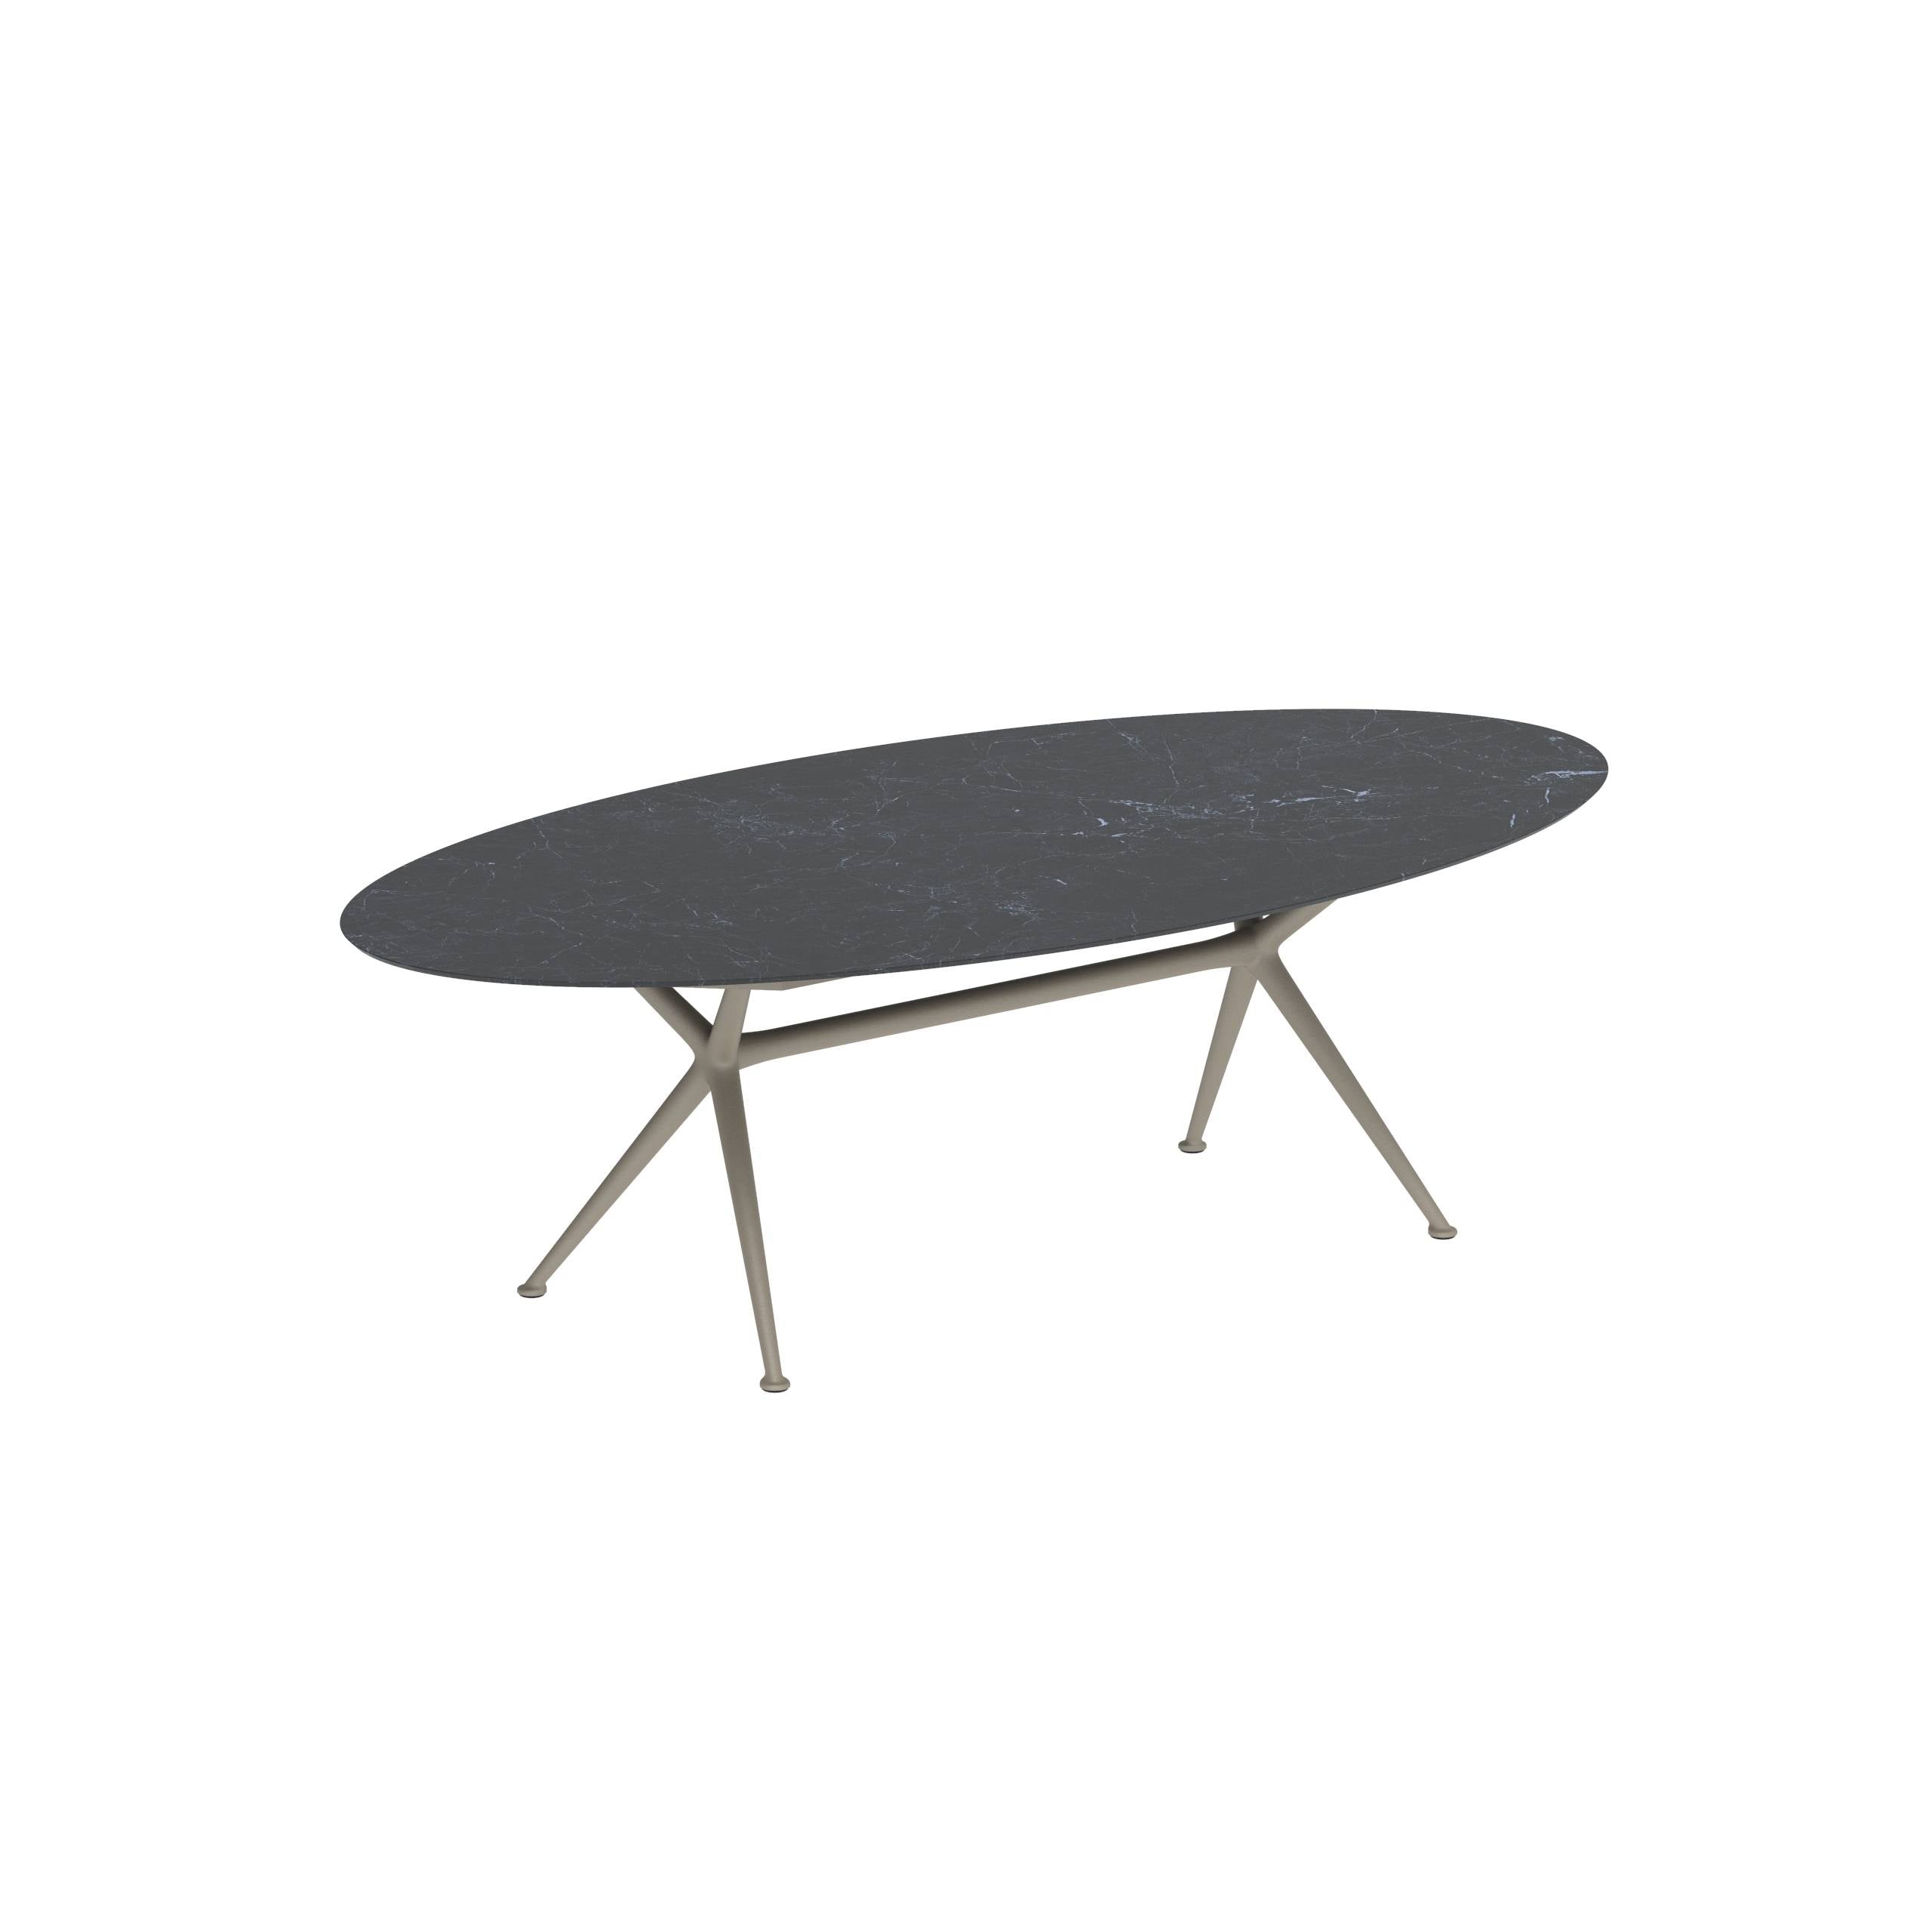 Exes Table Ellipse 250x130cm Alu Legs Sand - Table Top Ceramic Nero Marquina